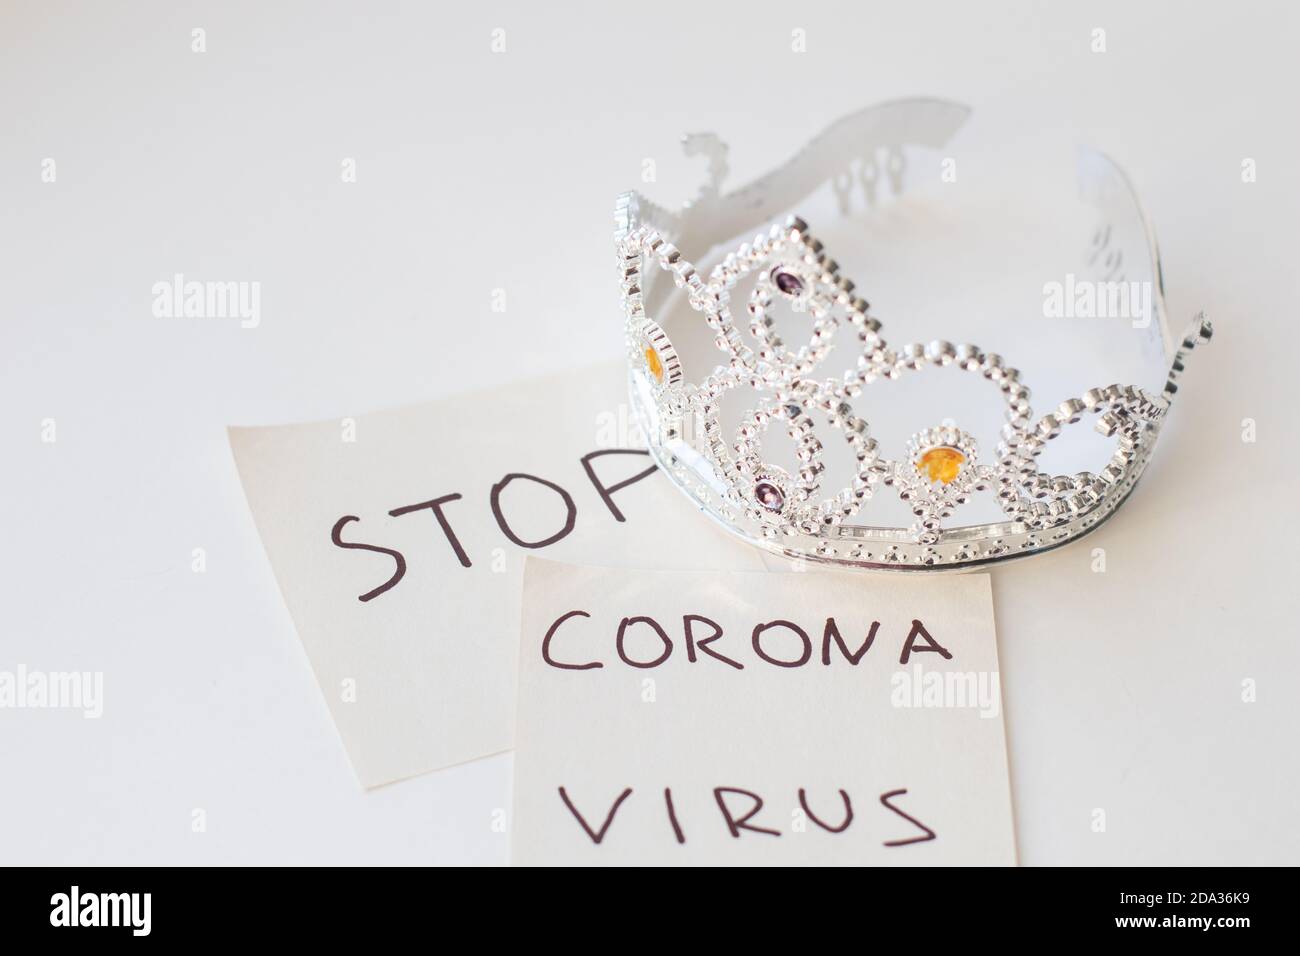 Texte STOP VIRUS CORONA et modèle de couronne. Concept de coronavirus. COVID-19. Nouveau coronavirus 2019-nCoV Banque D'Images